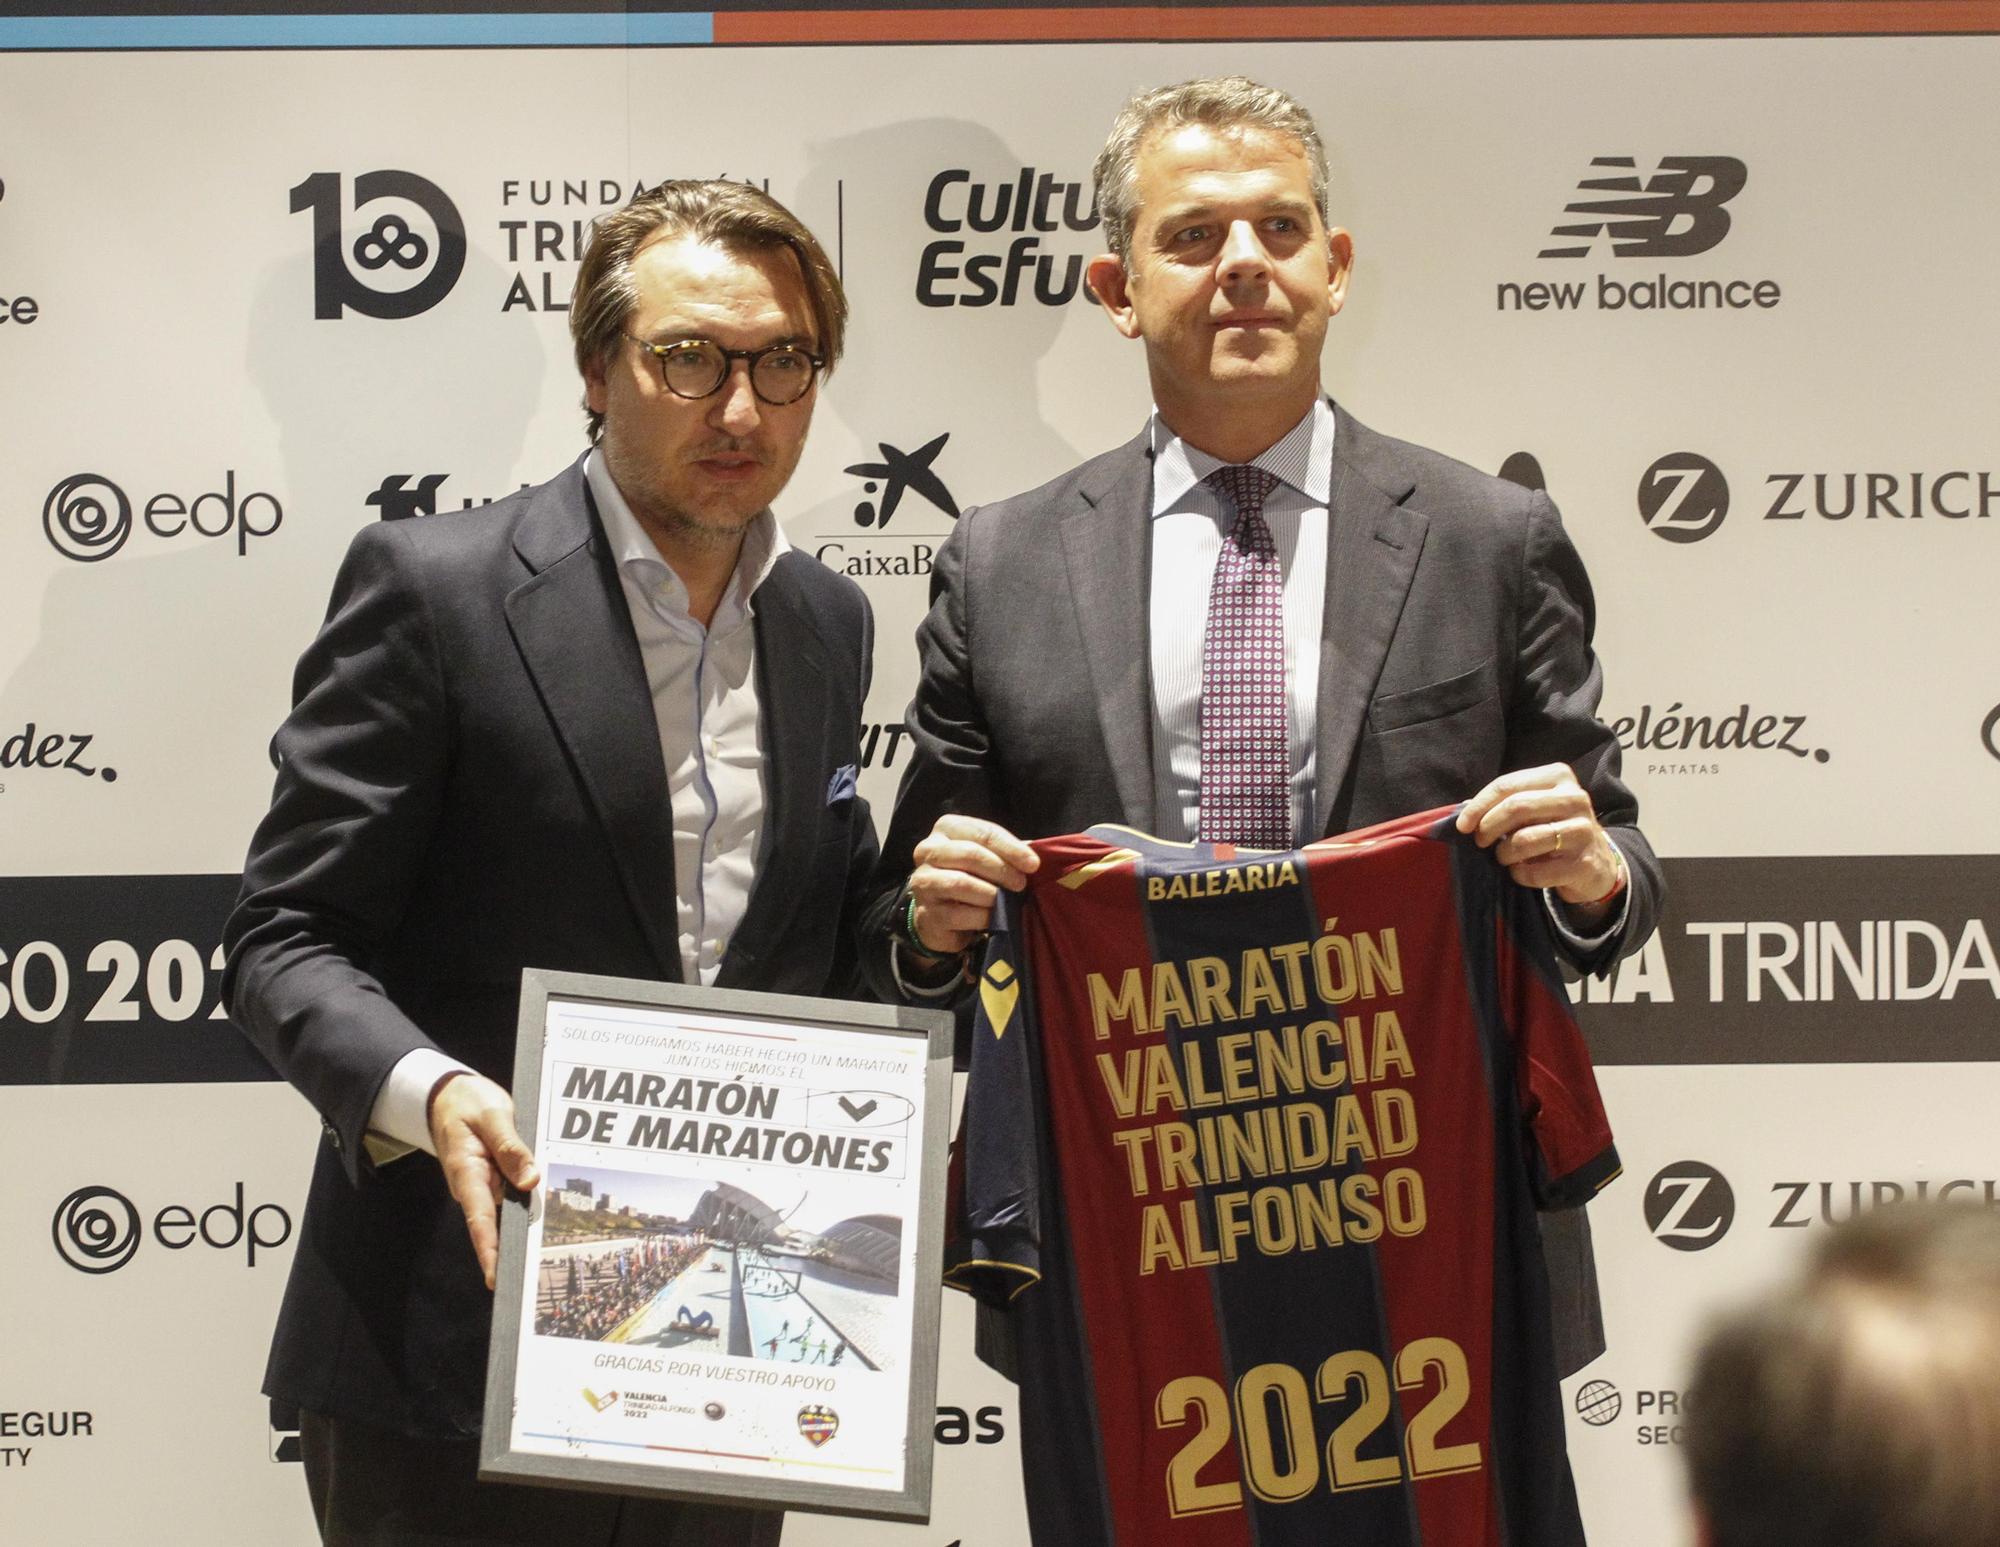 Acto de Hermanamiento del Maratón de Valencia